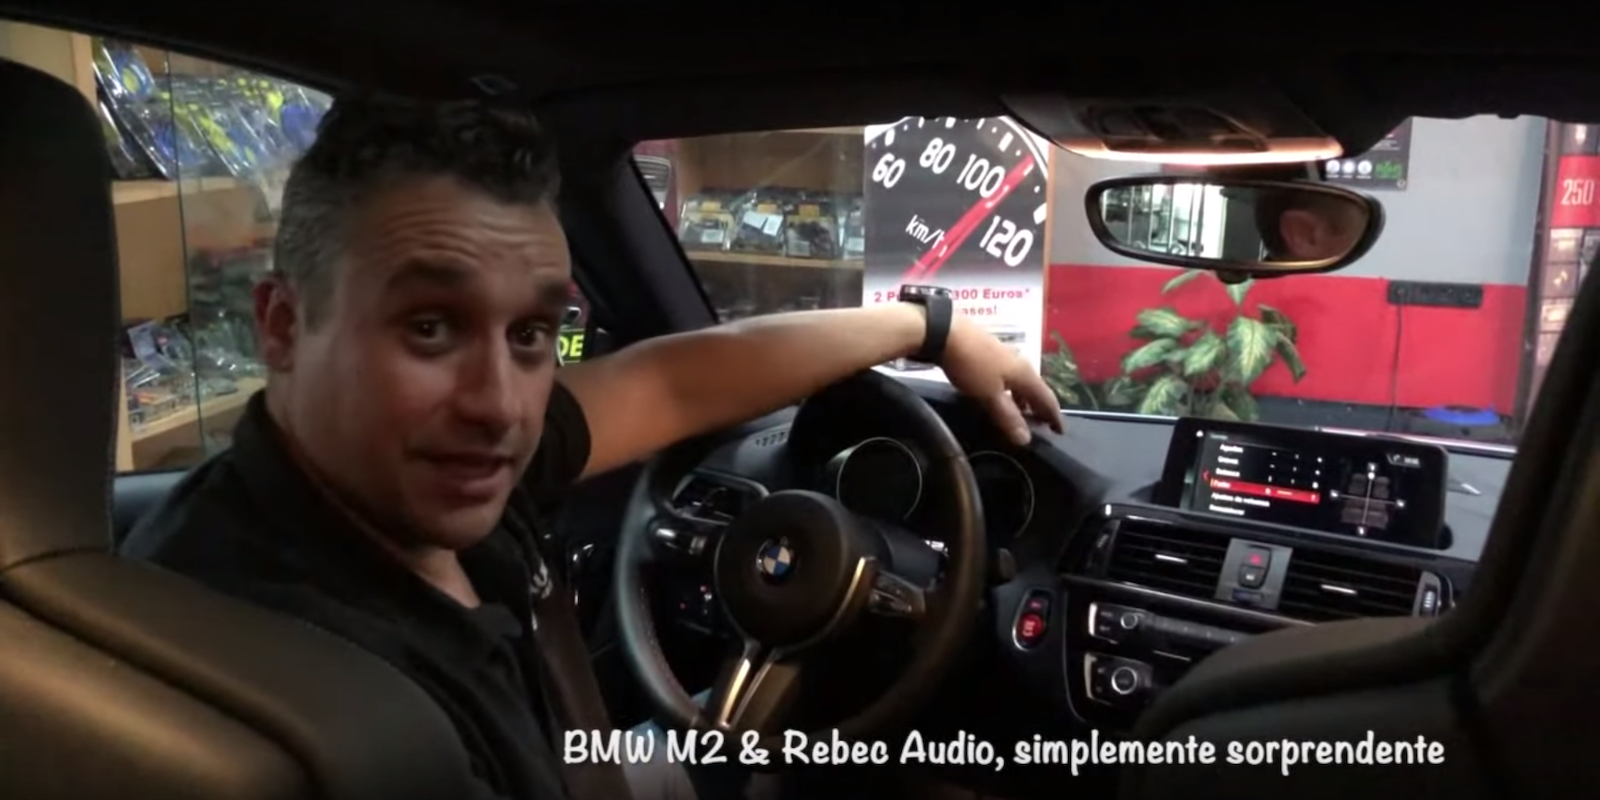 BMW M2 & Rebec Audio, simplemente sorprendente